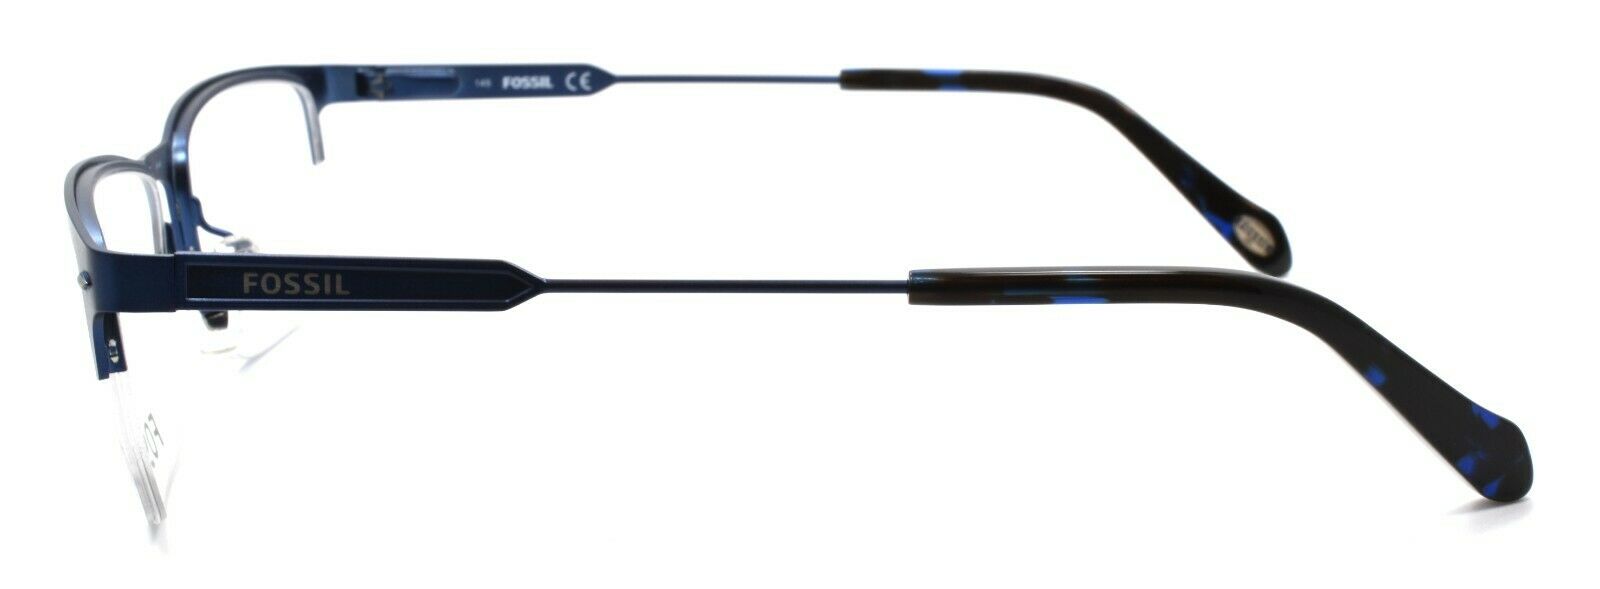 3-Fossil FOS 6080 0DA4 Men's Eyeglasses Frames Half-rim 54-17-145 Navy Blue-827886073801-IKSpecs